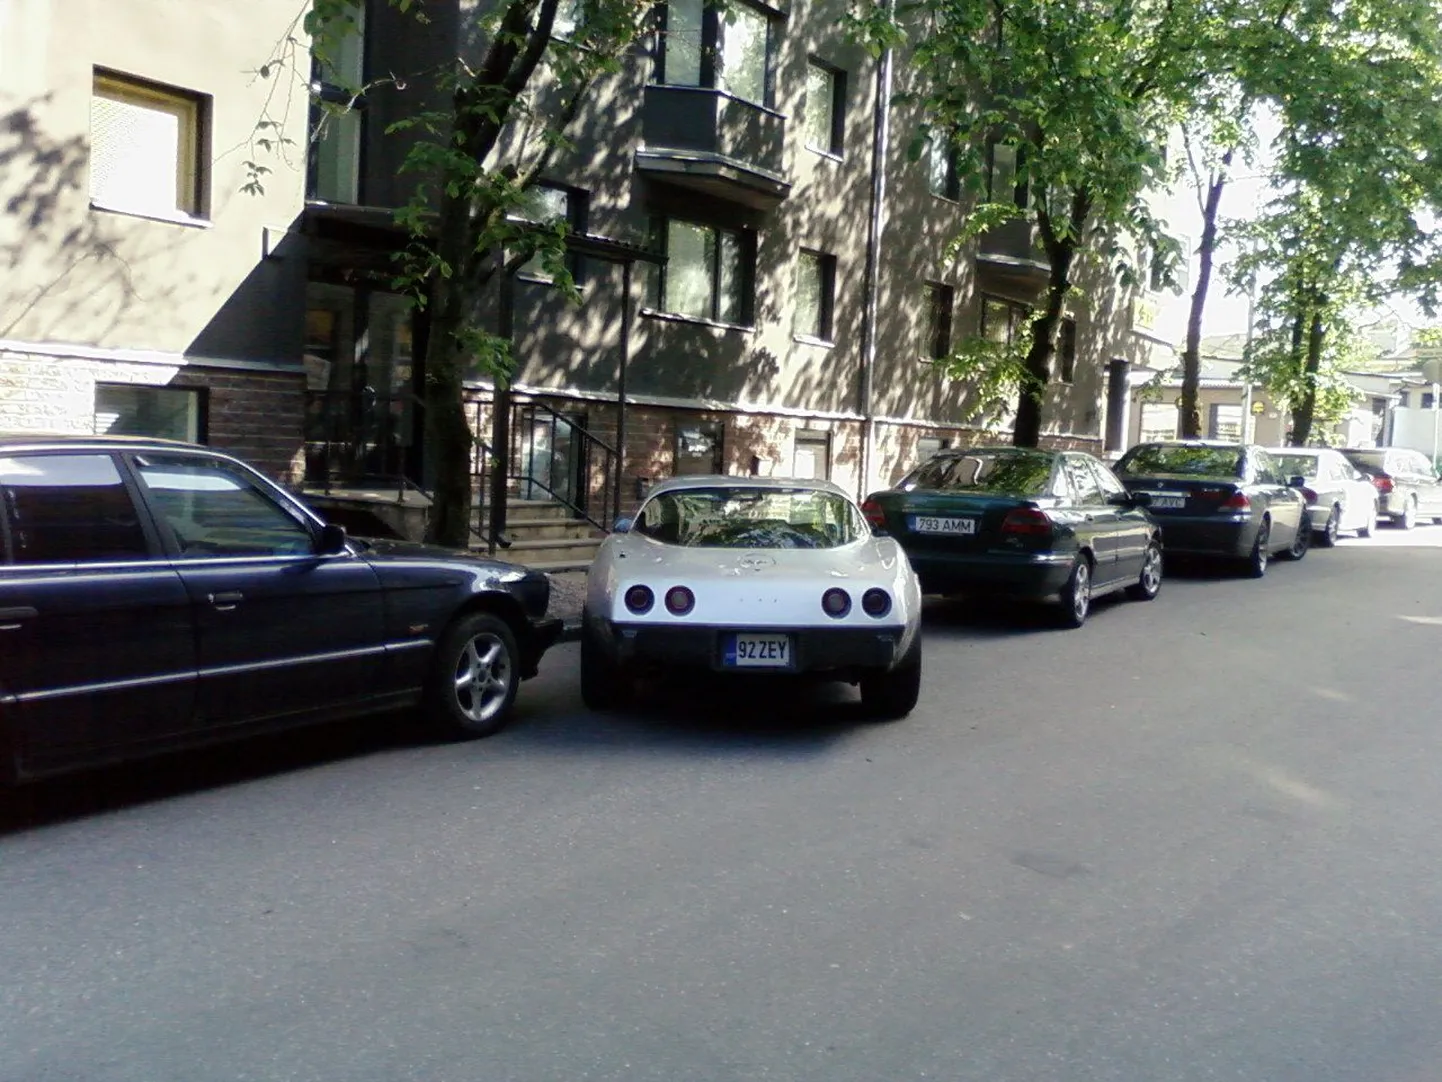 NATO kohtumise ajal läheb parkimisega Tallinna kesklinnas kitsaks.